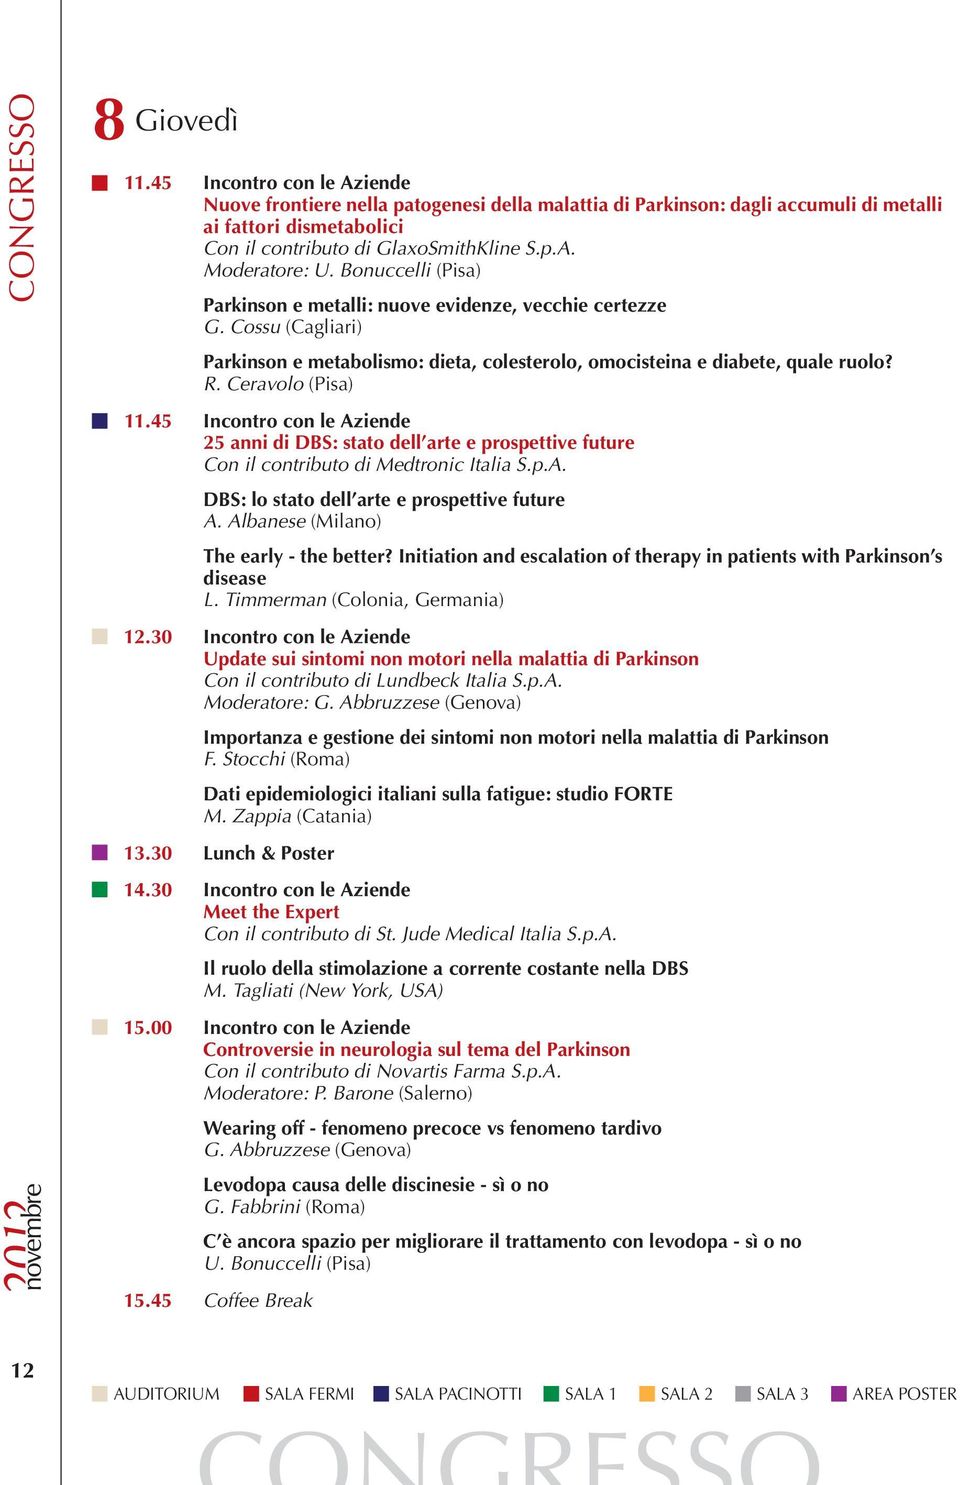 Bonuccelli (Pisa) Parkinson e metalli: nuove evidenze, vecchie certezze G. Cossu (Cagliari) Parkinson e metabolismo: dieta, colesterolo, omocisteina e diabete, quale ruolo? R. Ceravolo (Pisa) 11.